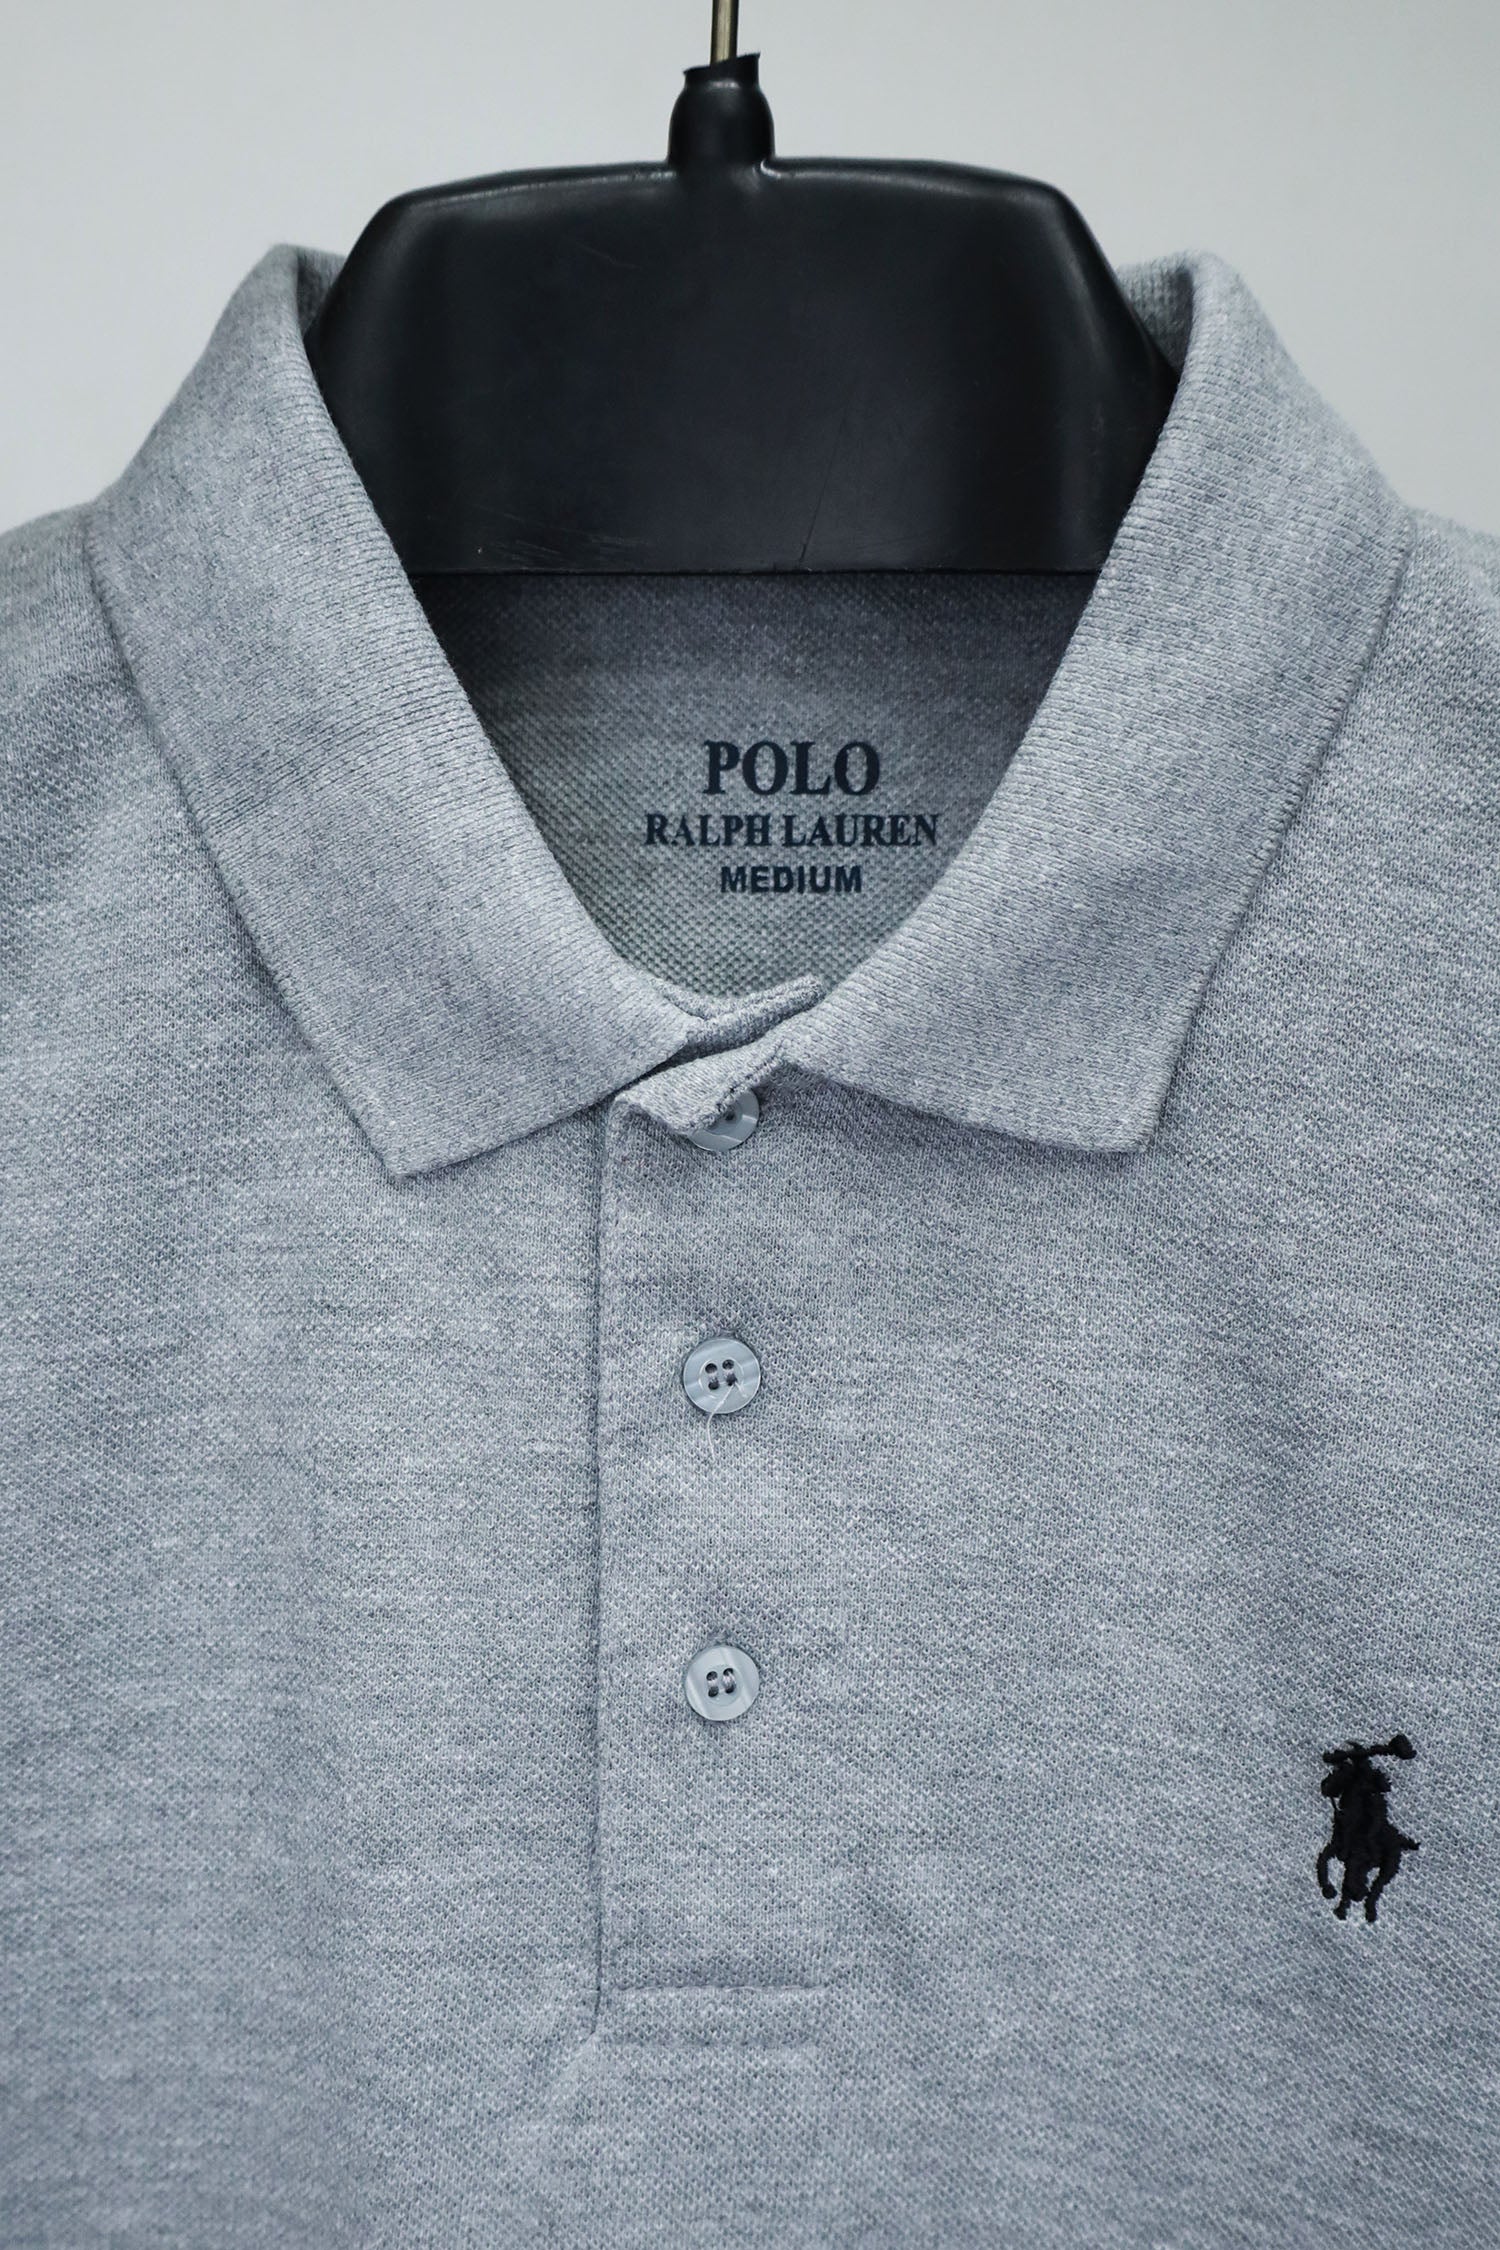 Rlph Lurn Embroidered Logo Plain Polo Shirt